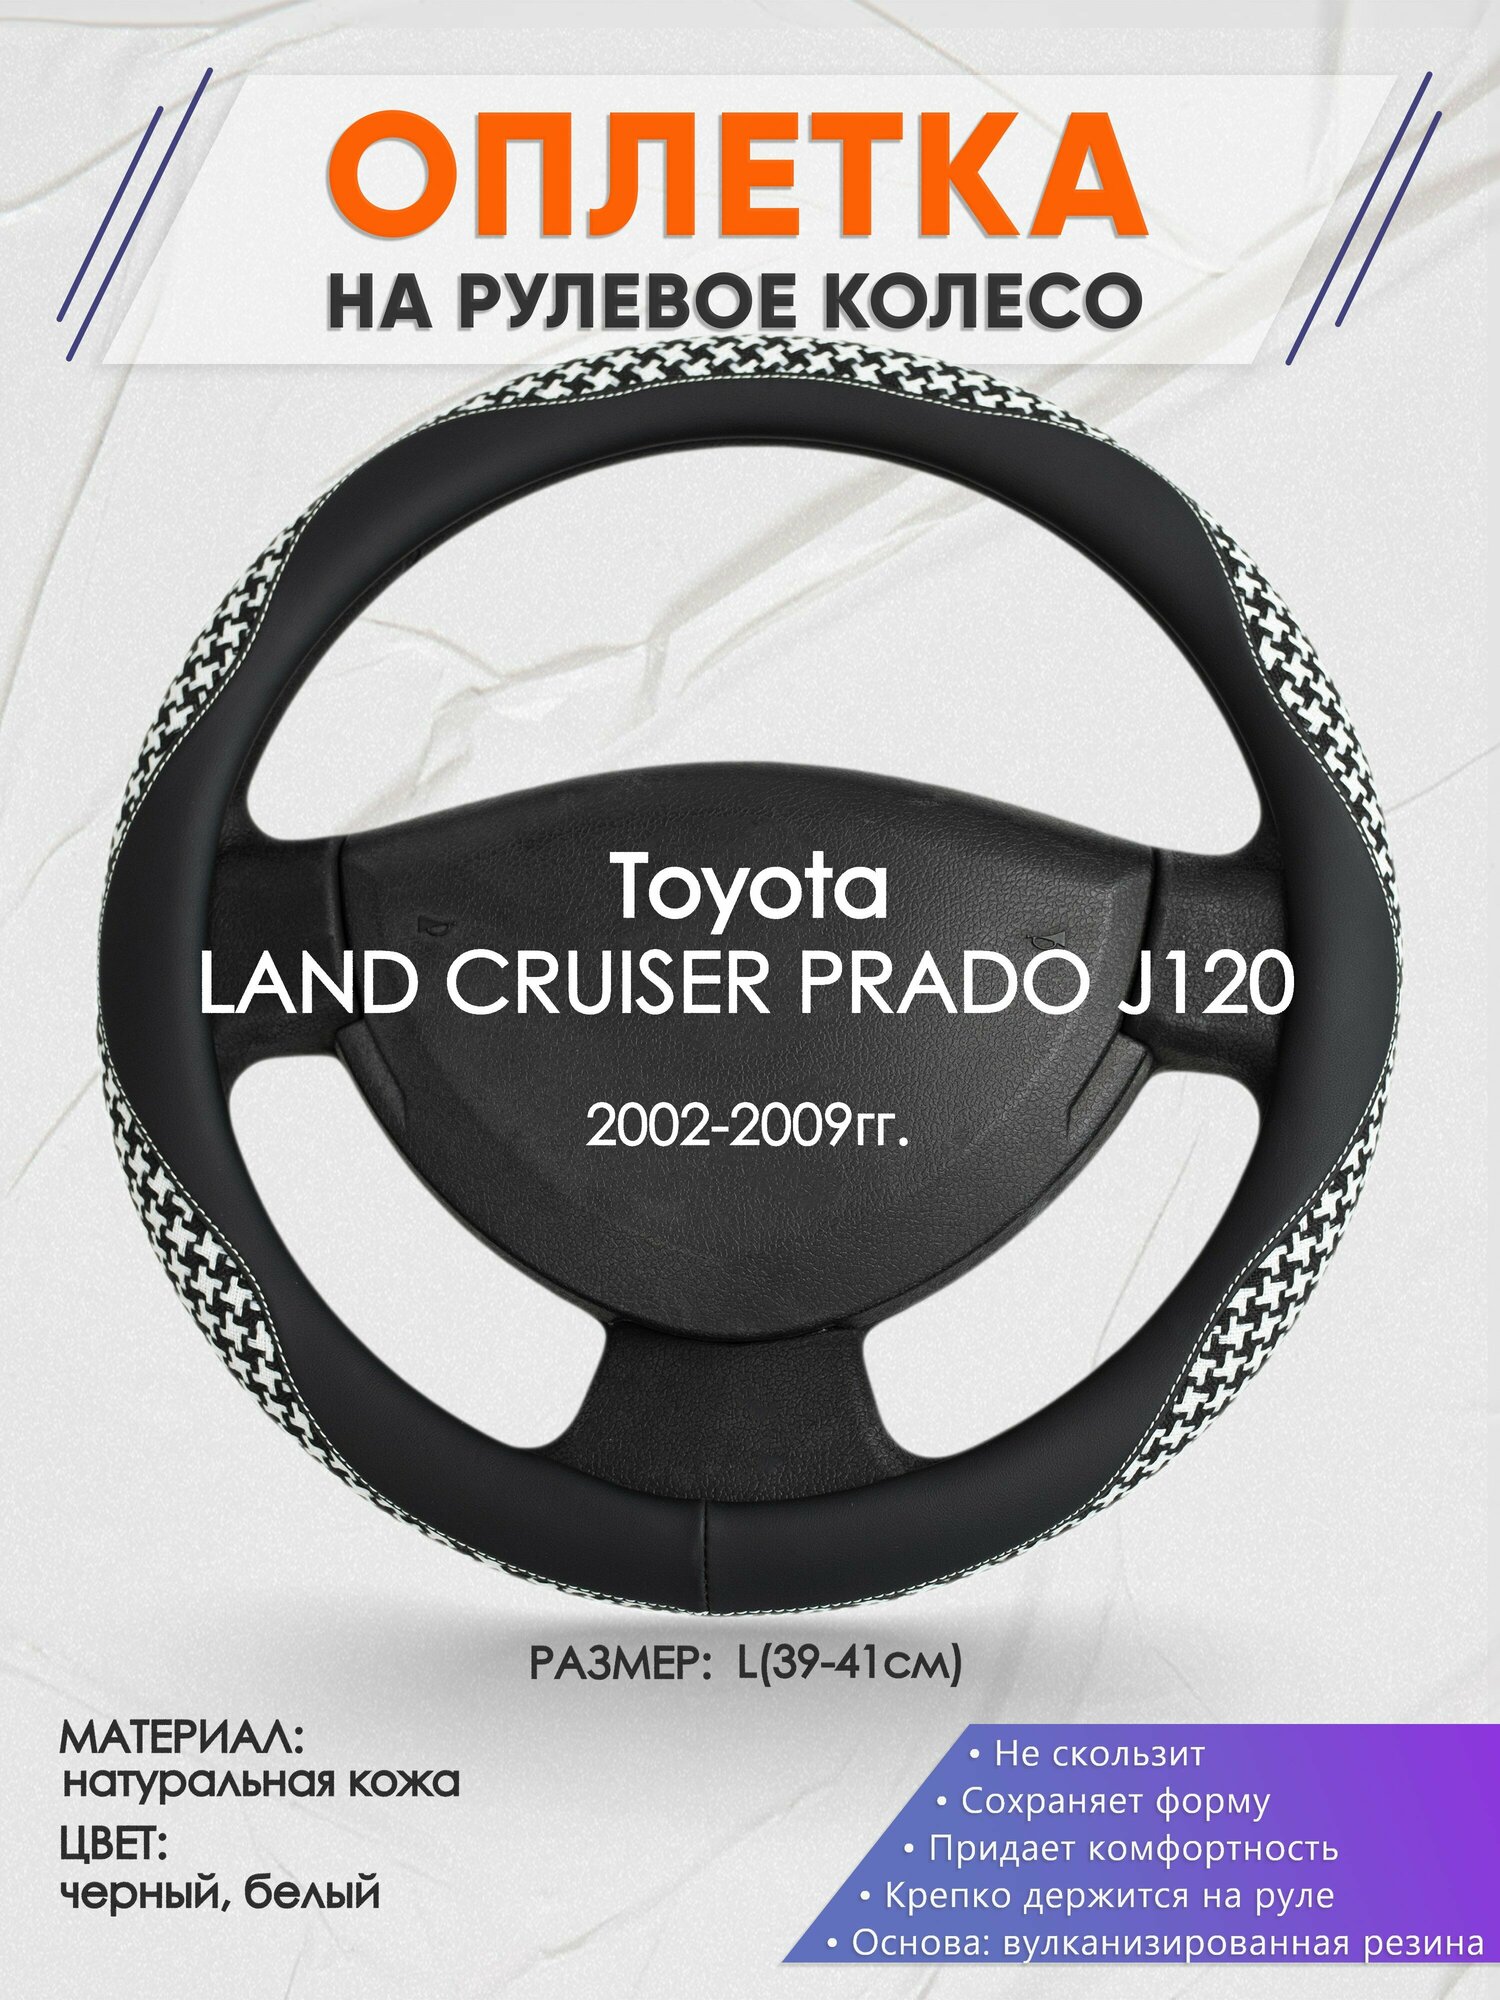 Оплетка на руль для Toyota LAND CRUISER PRADO J120(Тойота Ленд Крузер Прадо 120) 2002-2009, L(39-41см), Натуральная кожа 21